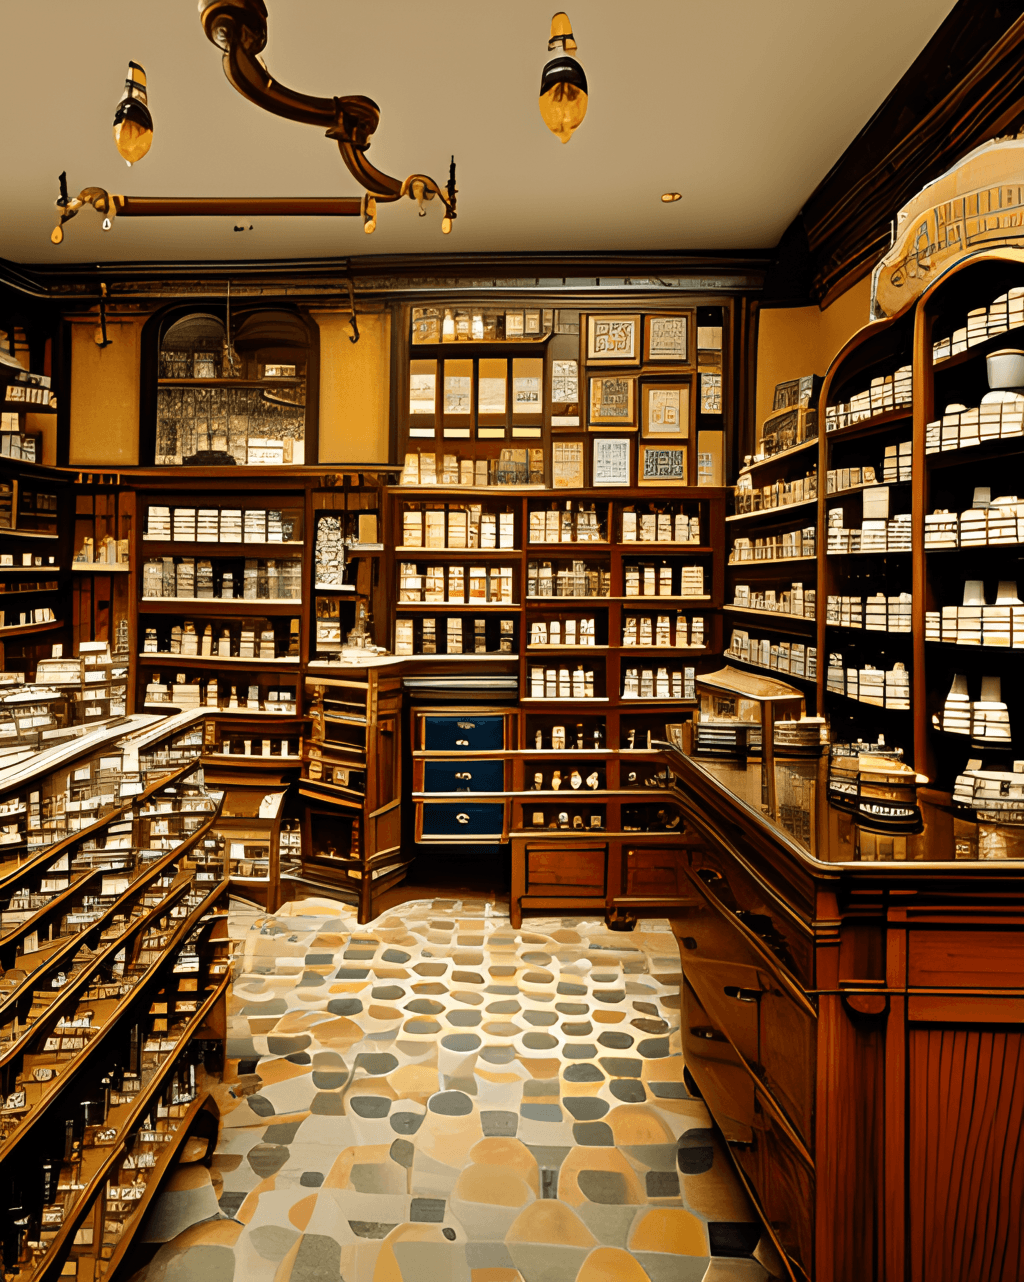 Interior of a Full Color Victorian Era Apothecary Shop Photograph ...